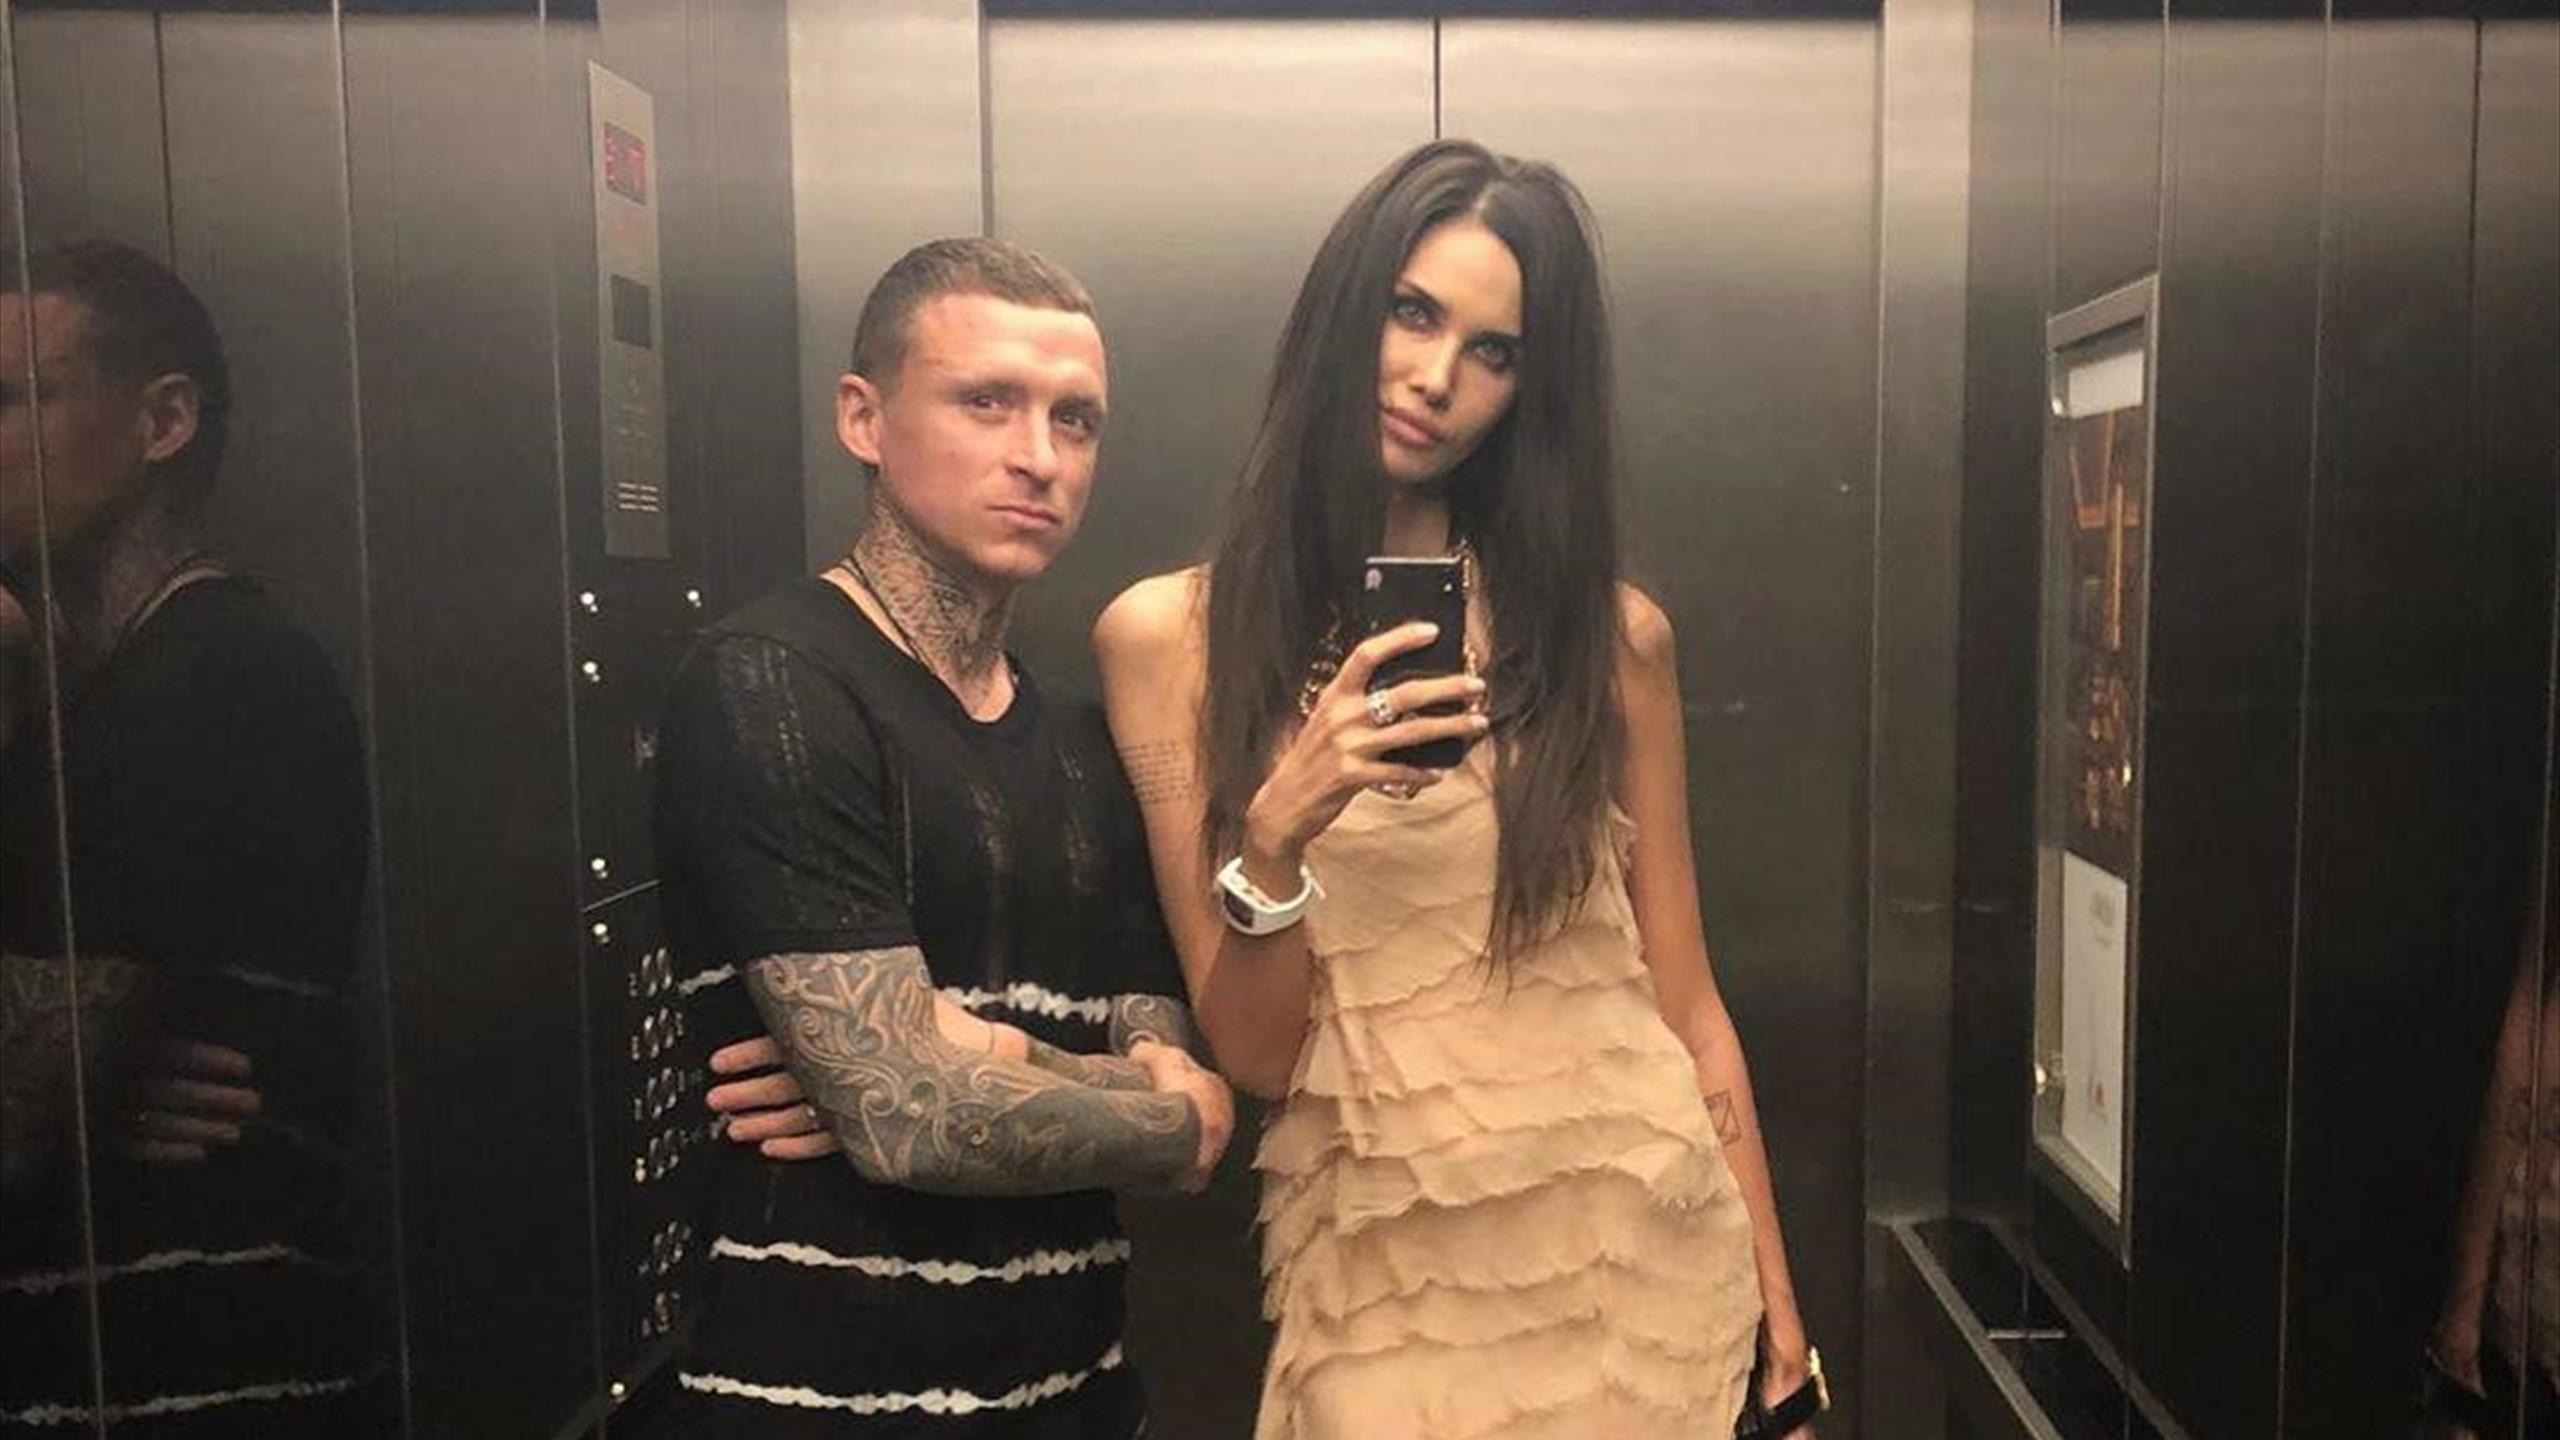 "Подло и низко": Павел Мамаев отобрал у бывшей жены две иномарки
